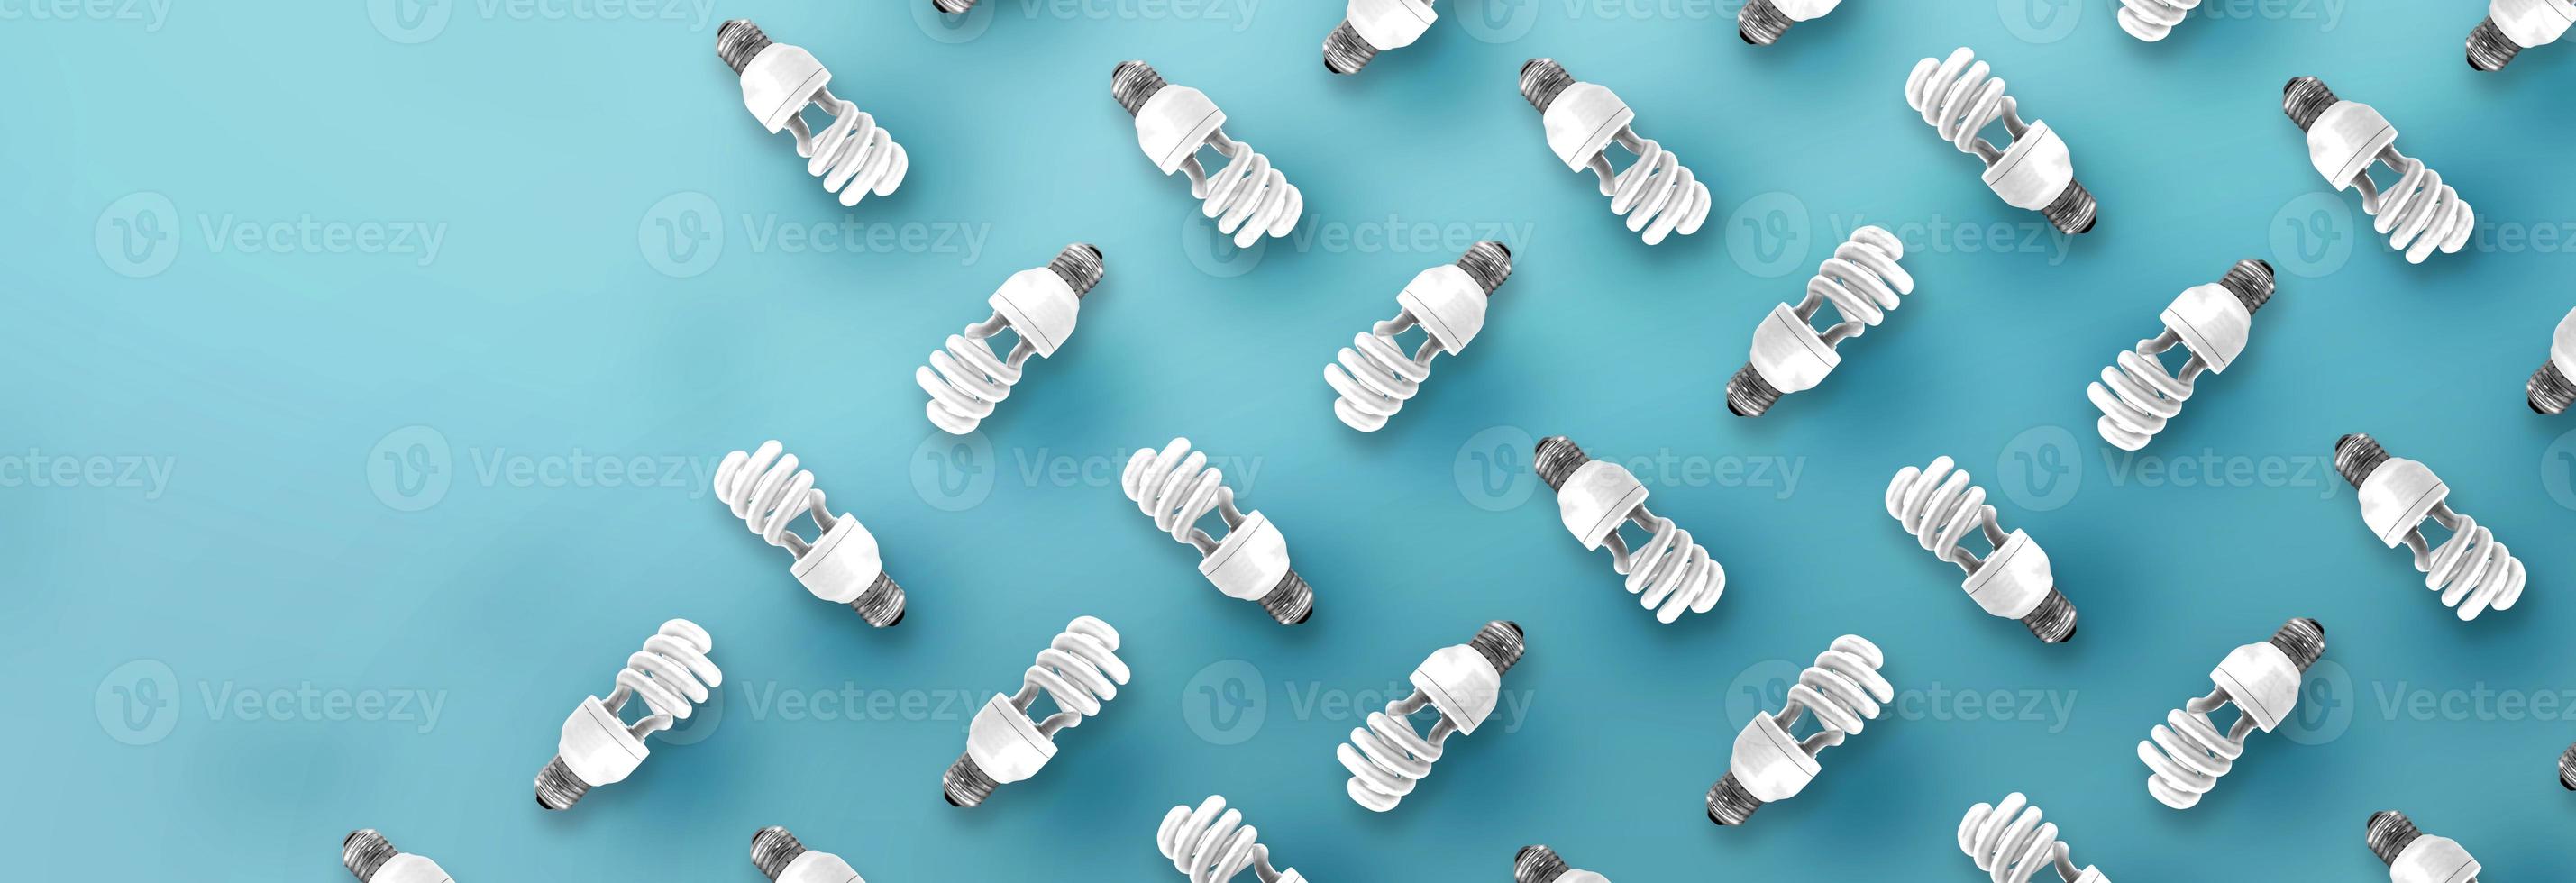 modèle d'ampoule fluorescente sur fond bleu. photo